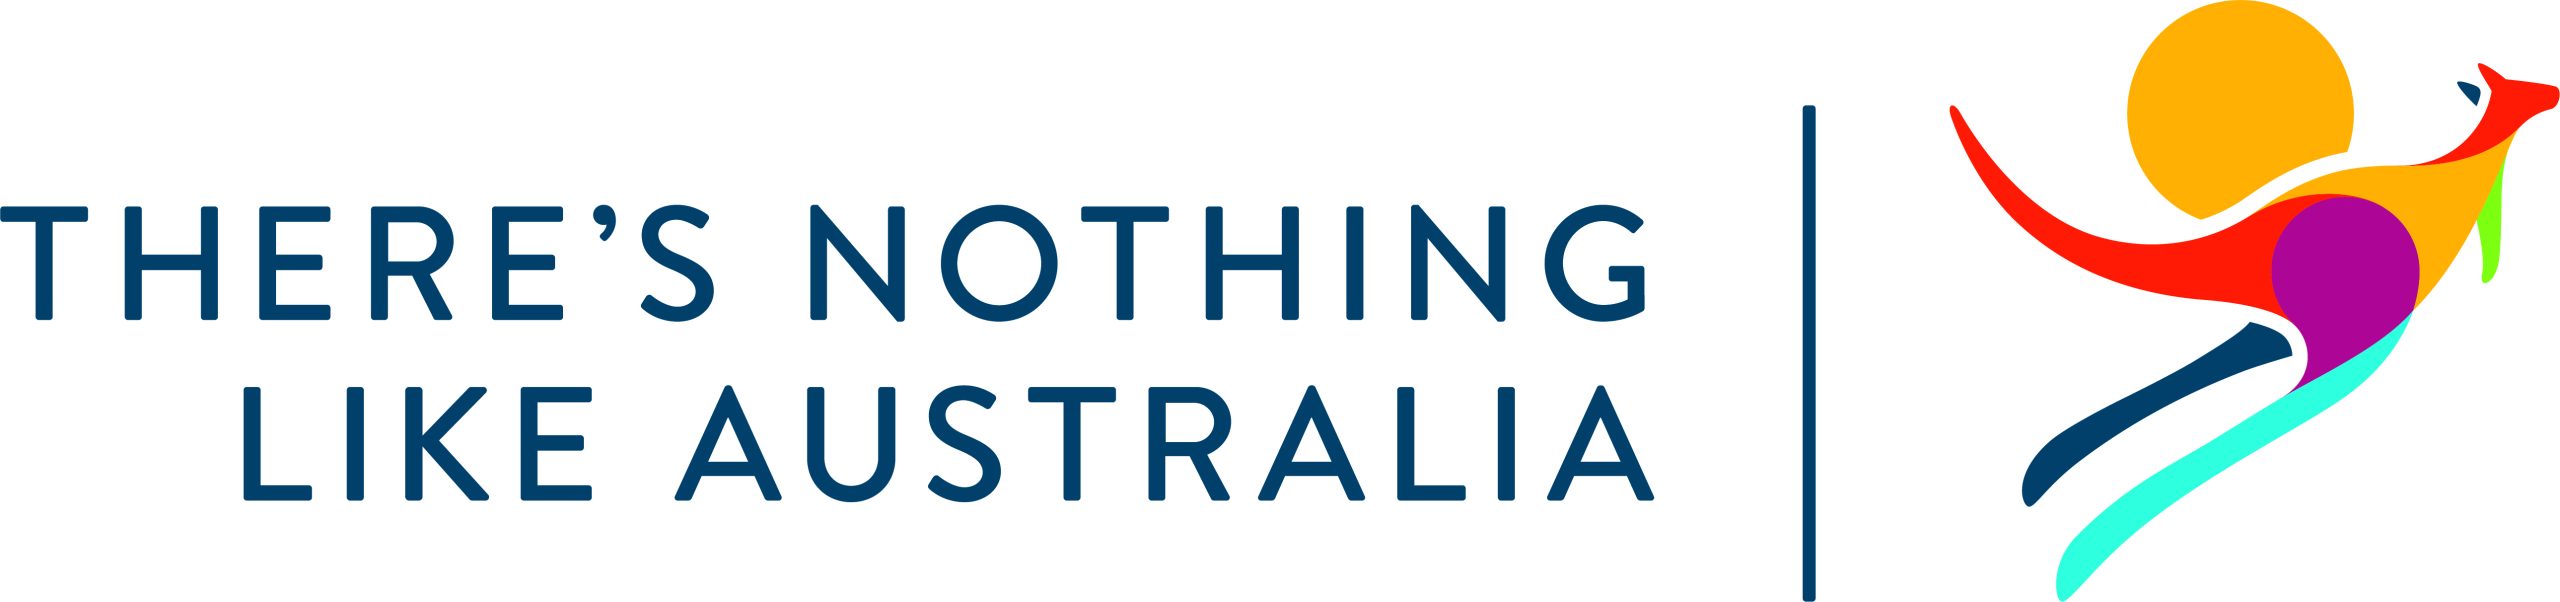 Theres-nothing-like-australia-logo